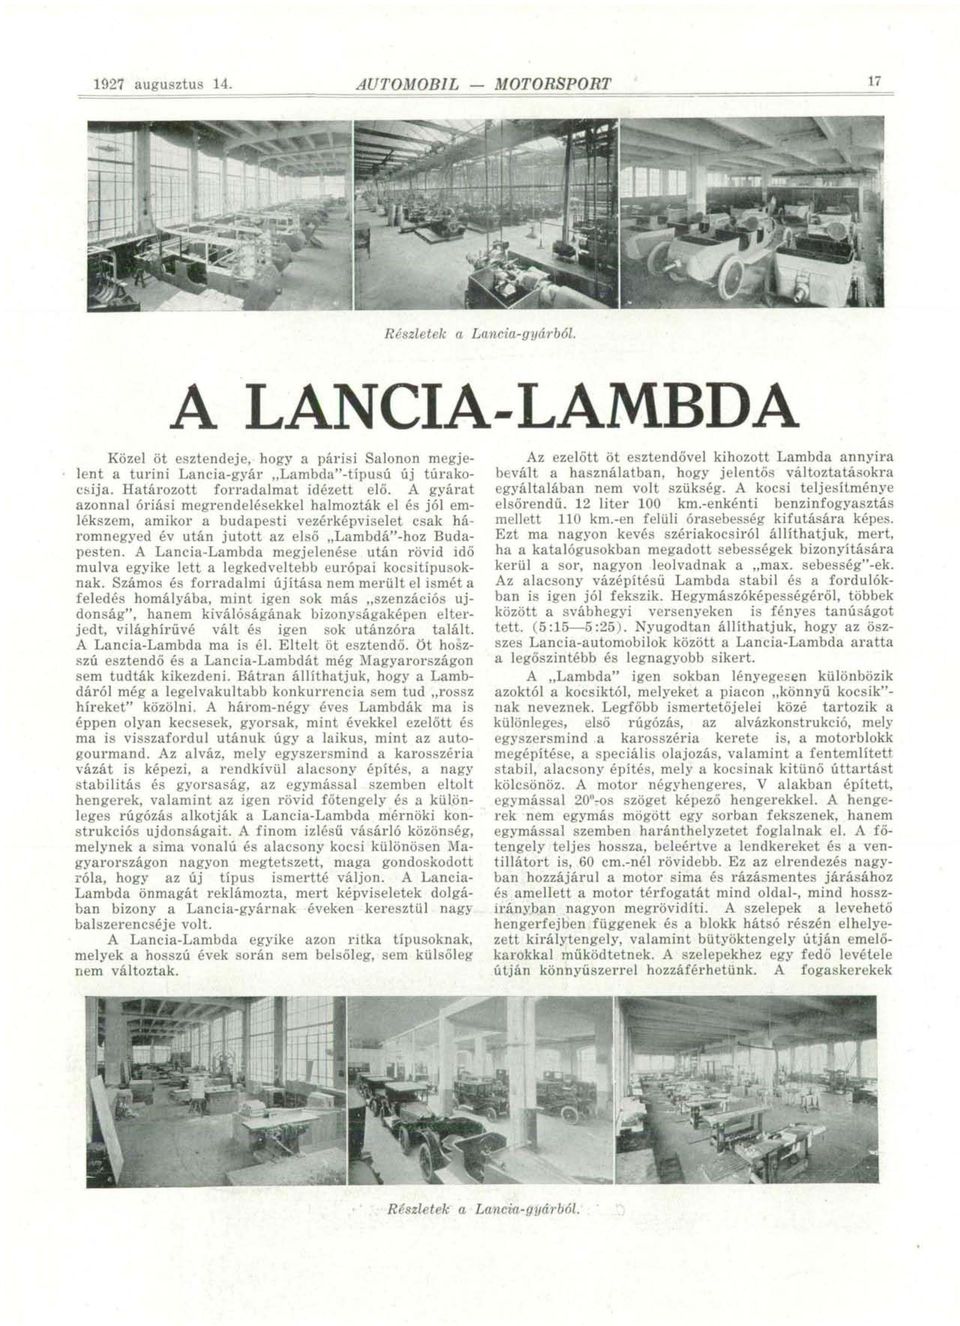 A Lancia-Lambda megjelenése után rövid idő múlva egyike lett a legkedveltebb európai kocsitípusoknak.